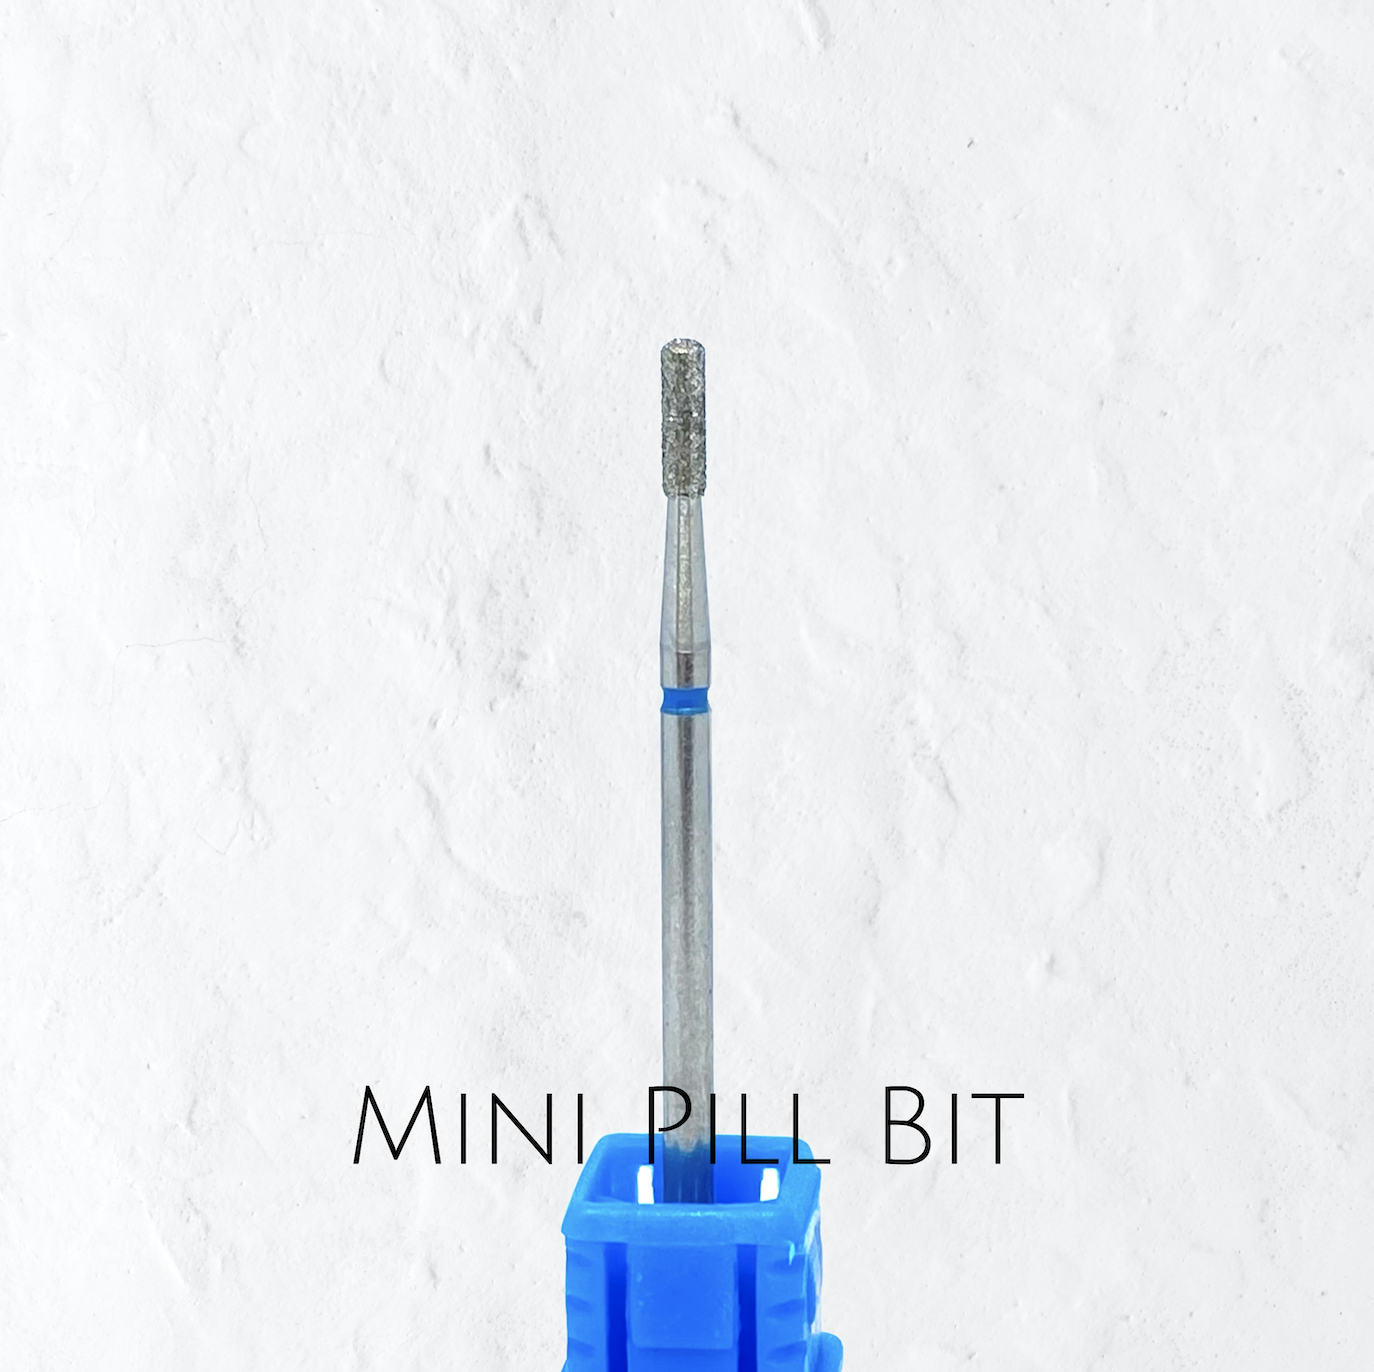 Mini Pill- Diamond Cuticle Bit